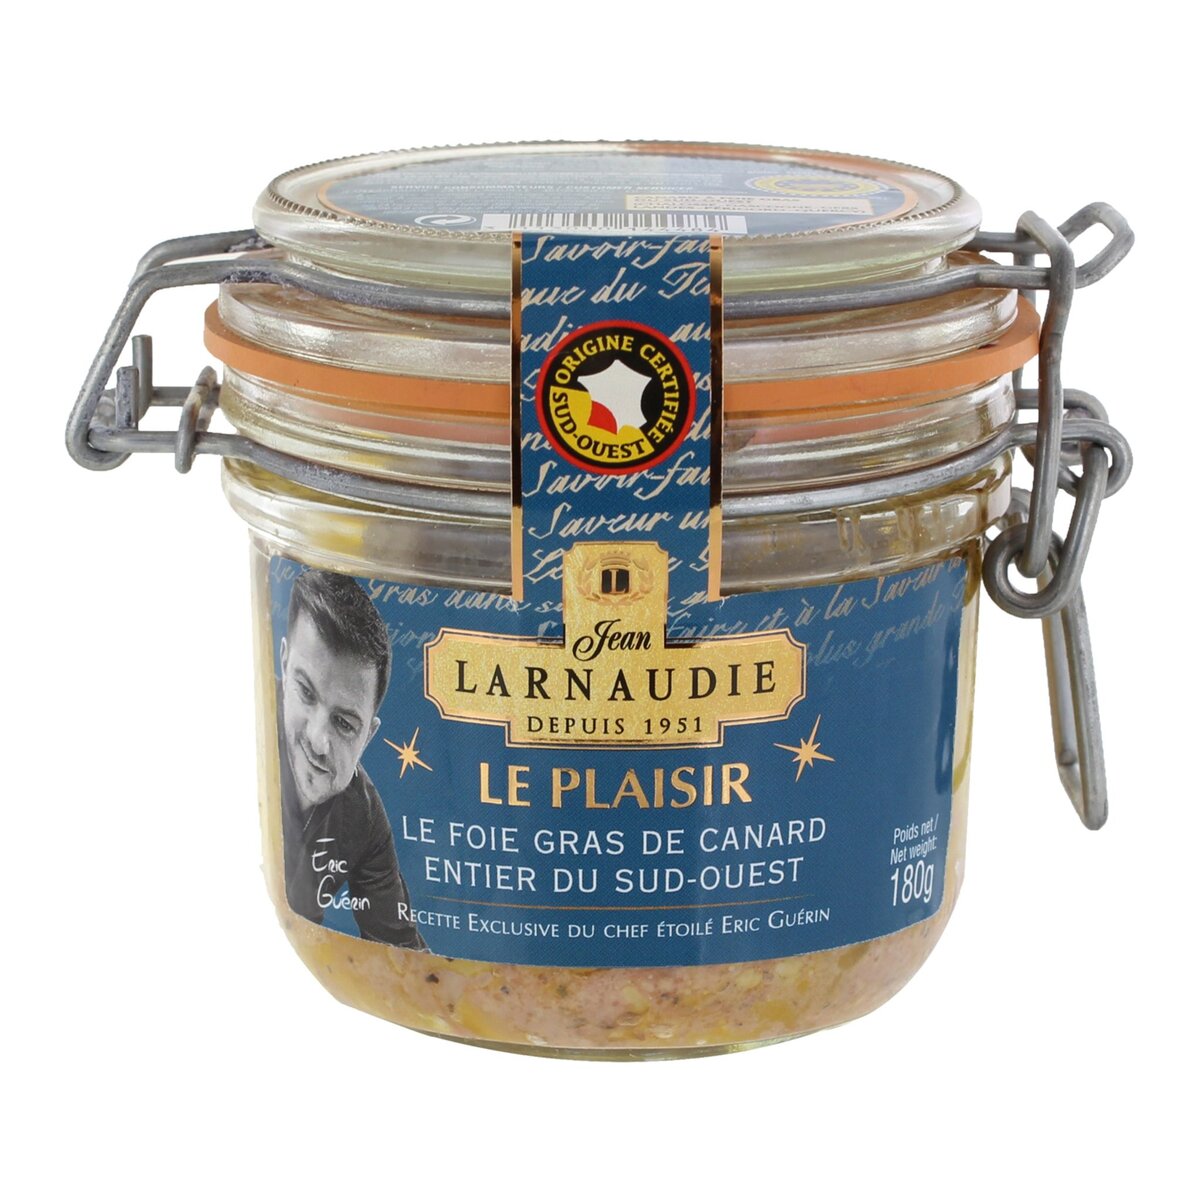 LARNAUDIE Foie gras de canard entier du sud ouest recette Eric Guérin 4-5 parts 180g